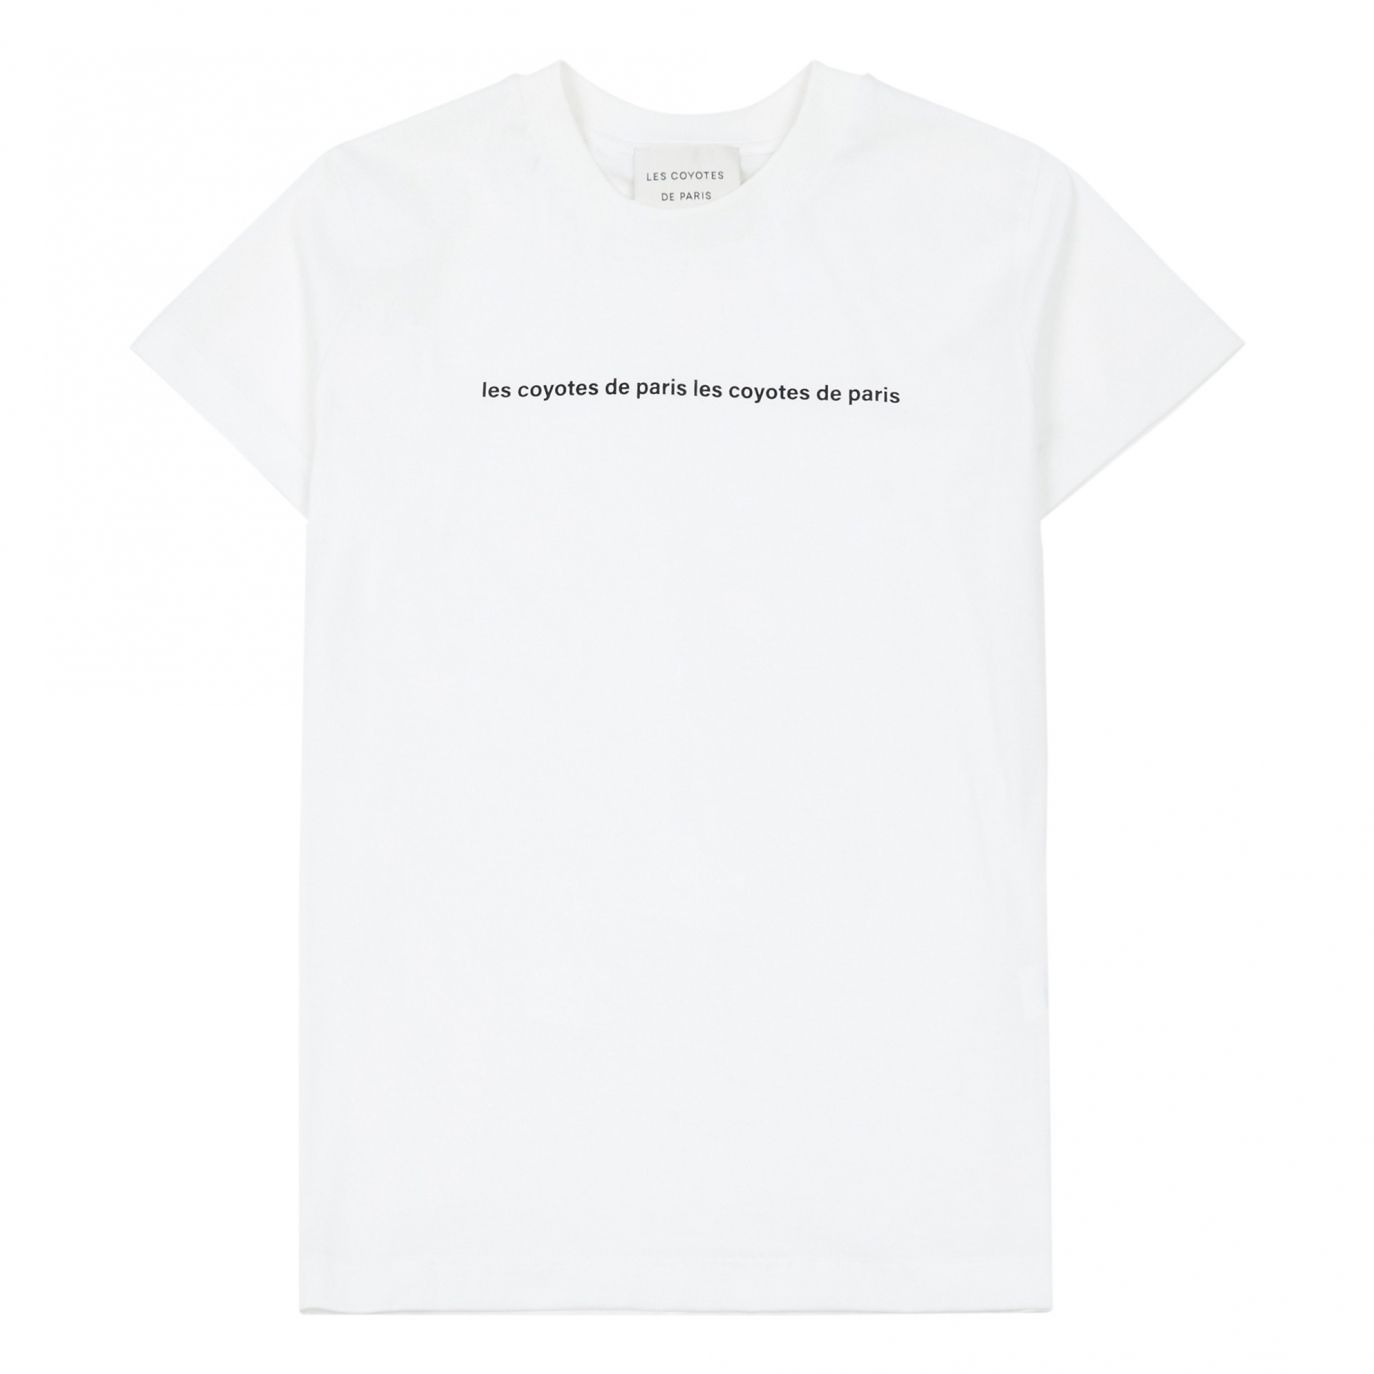 Les Coyotes de Paris - Melia T-shirt White - Shirts & T-shirts - 111-22-068 